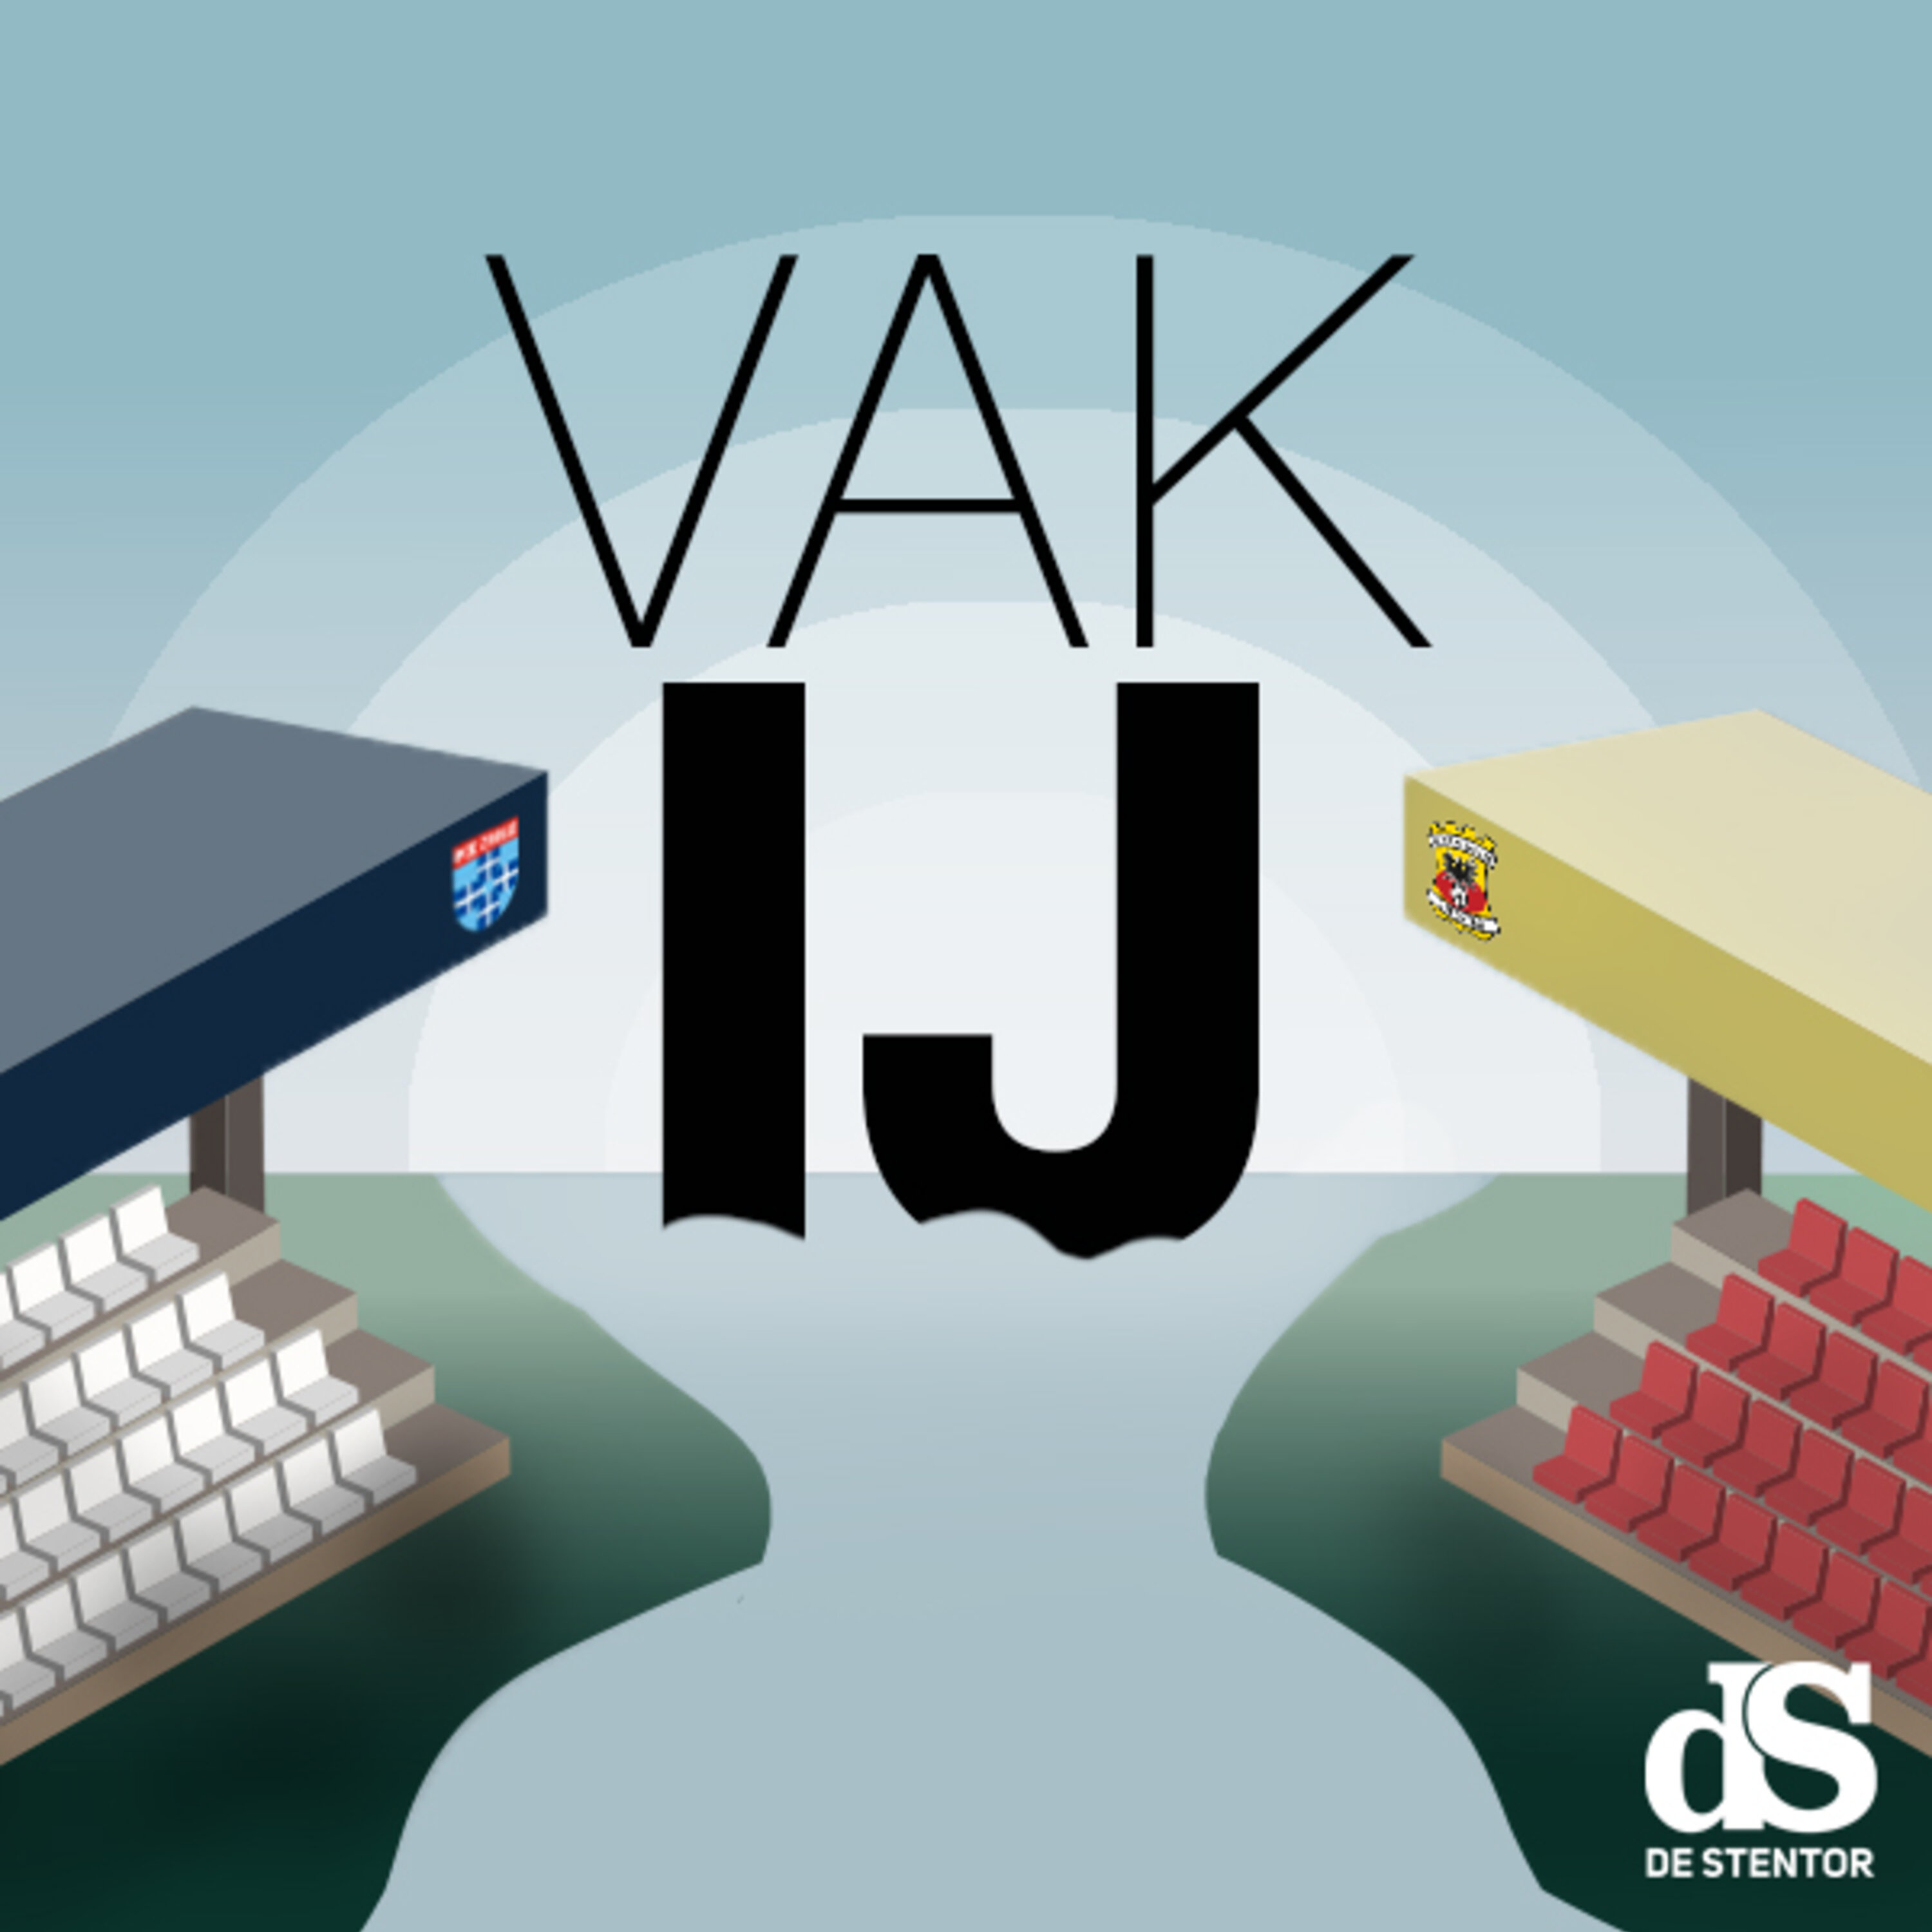 Vak IJ logo